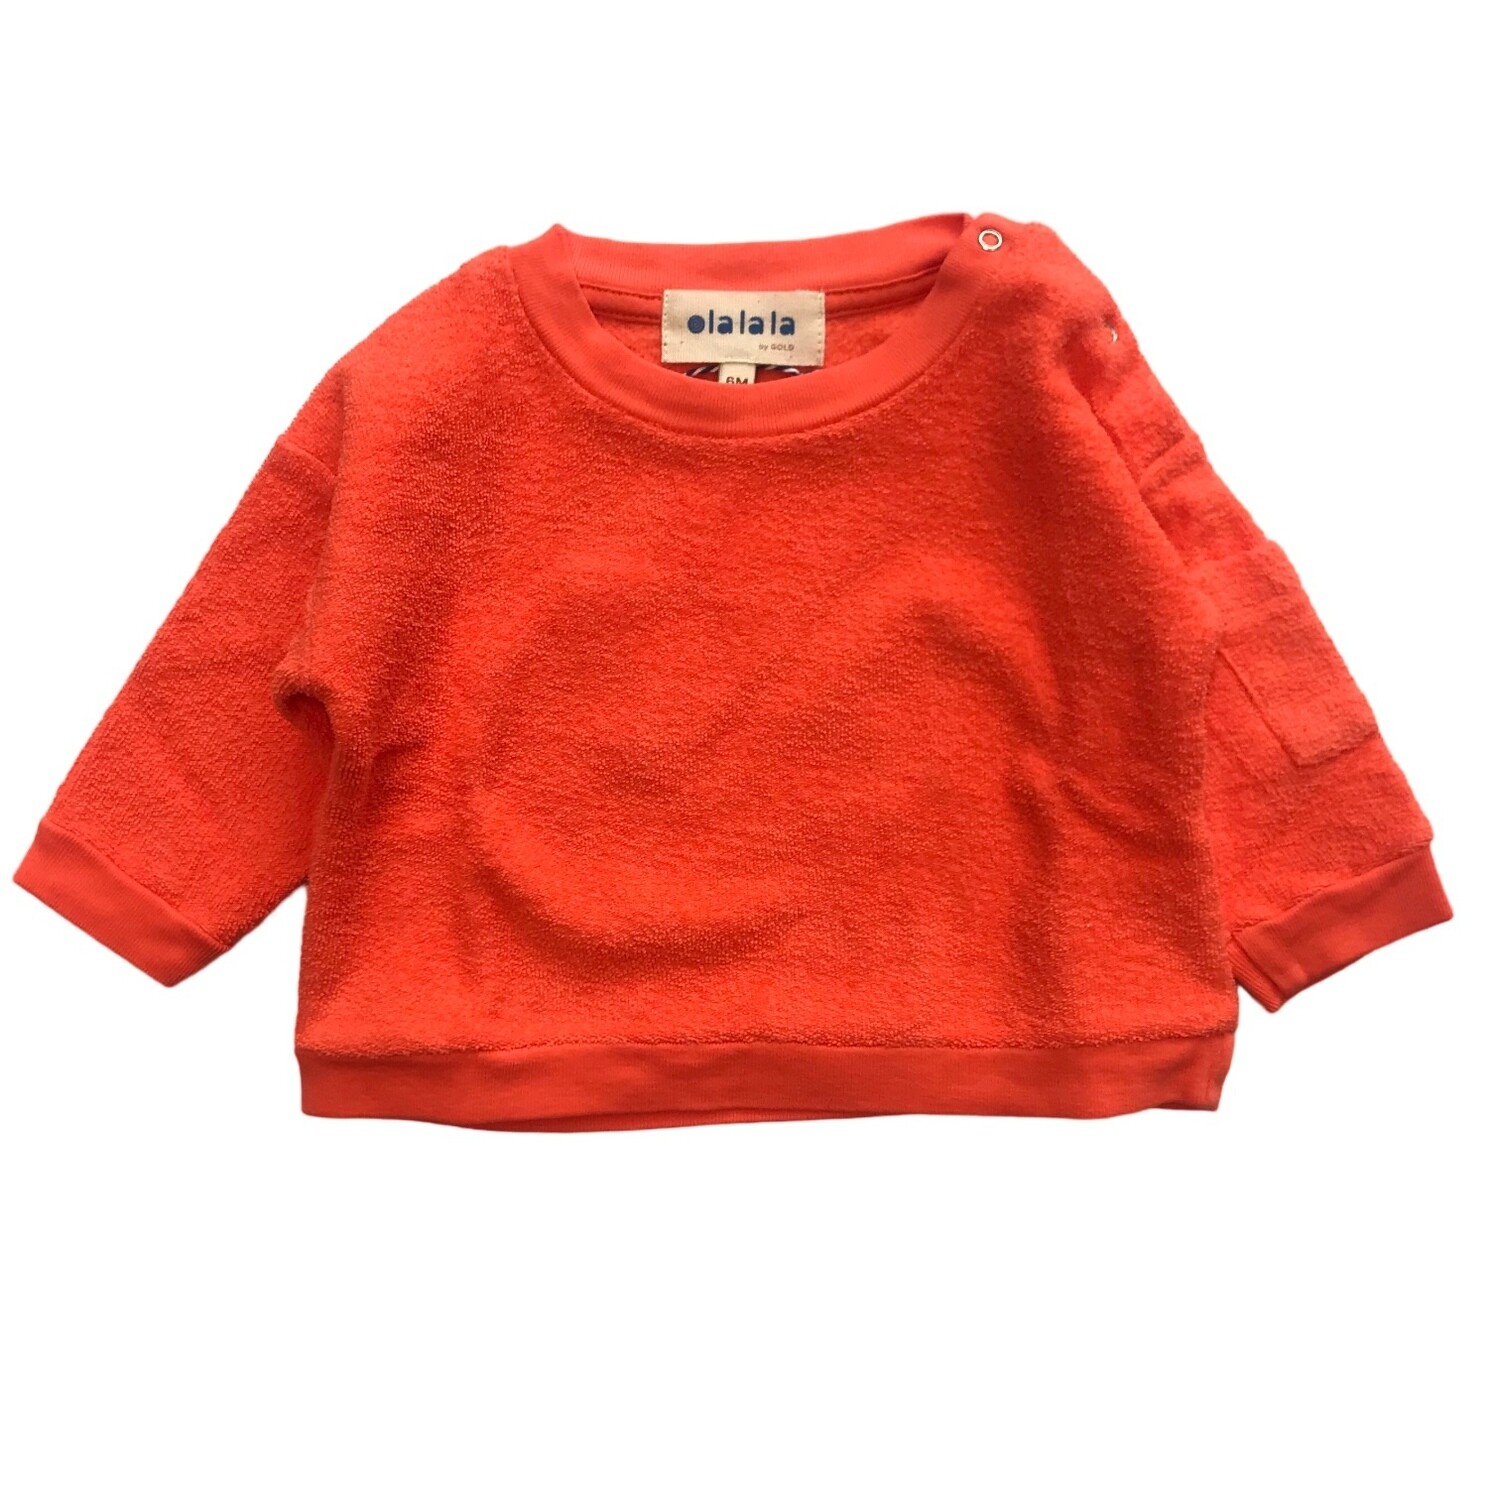 SIMO - Sponse sweater tango oranje